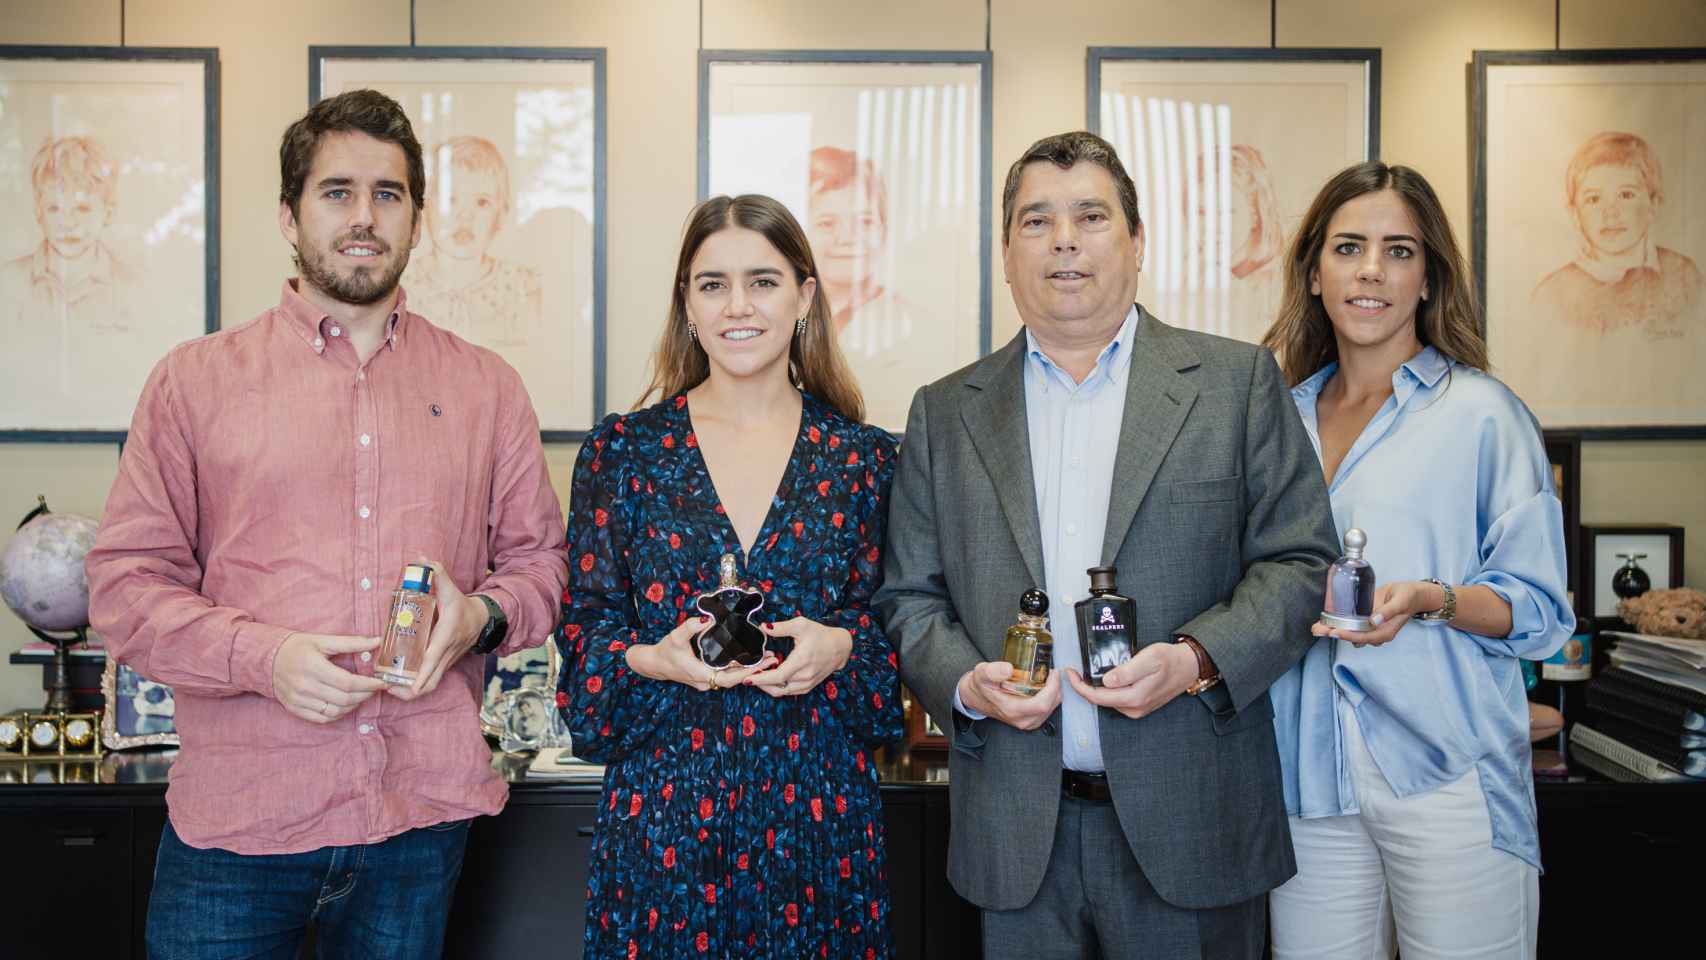 De izquierda a derecha, Carlos, María, Pedro y Ana, cuatro de los miembros de la familia Trolez sujetando los perfumes que crean.